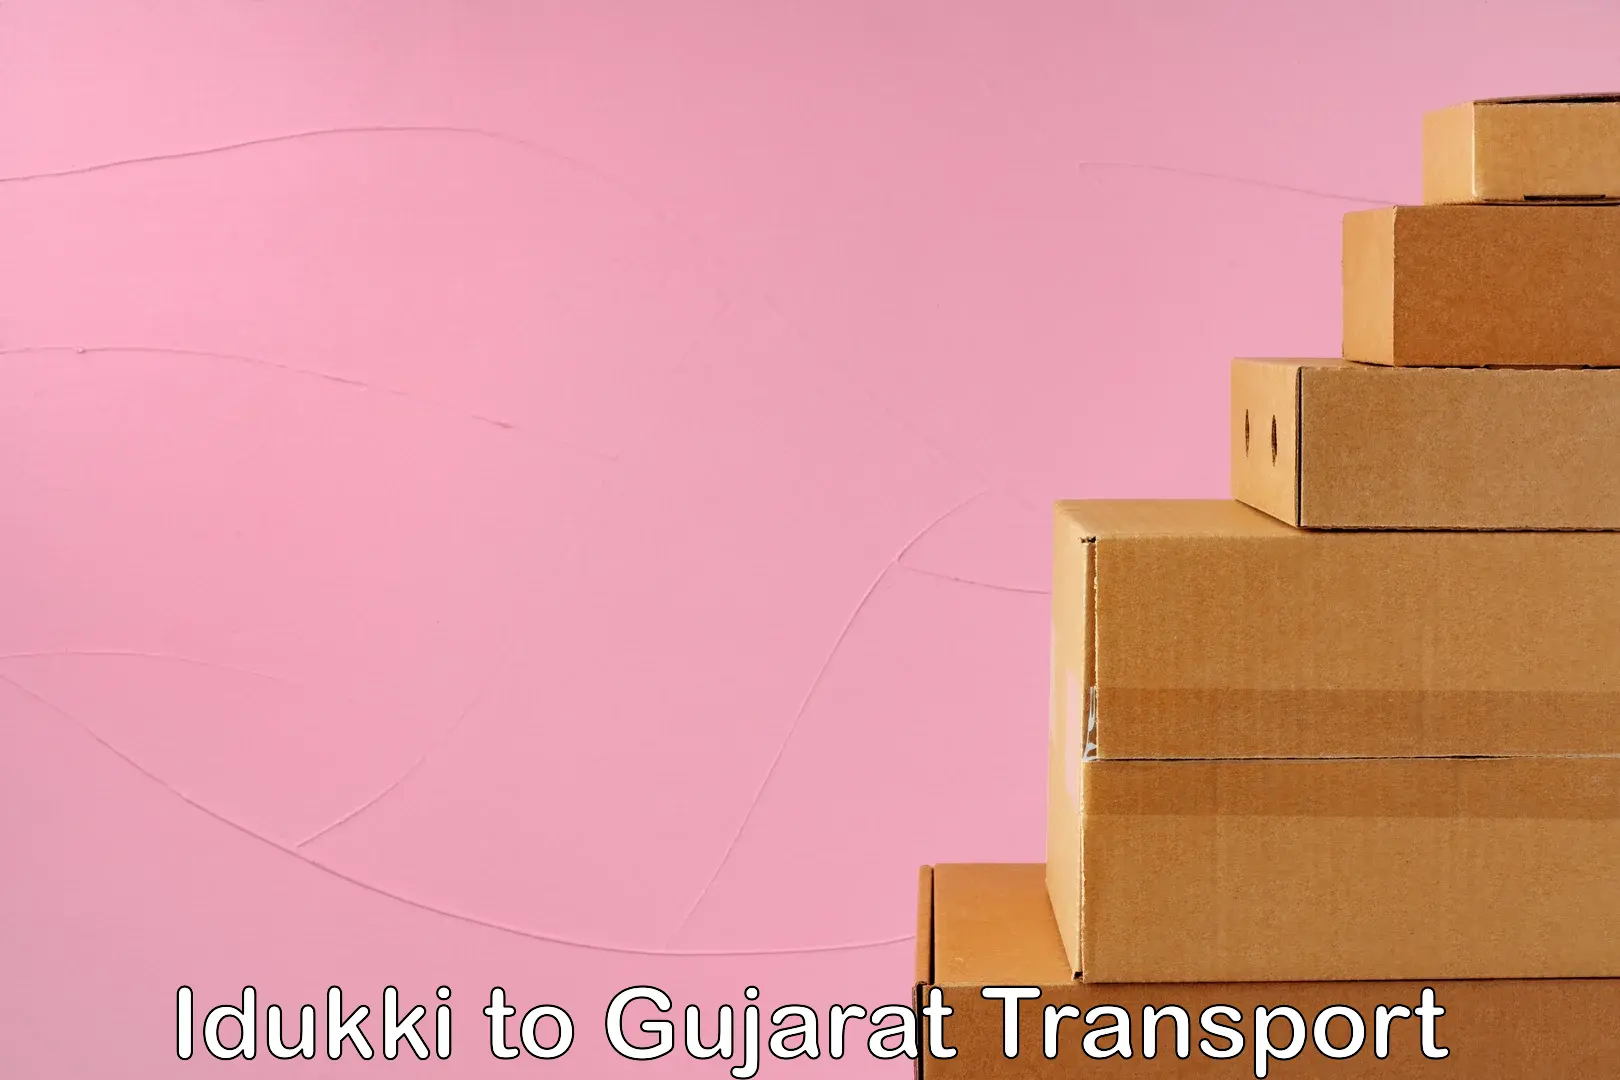 All India transport service Idukki to IIIT Surat